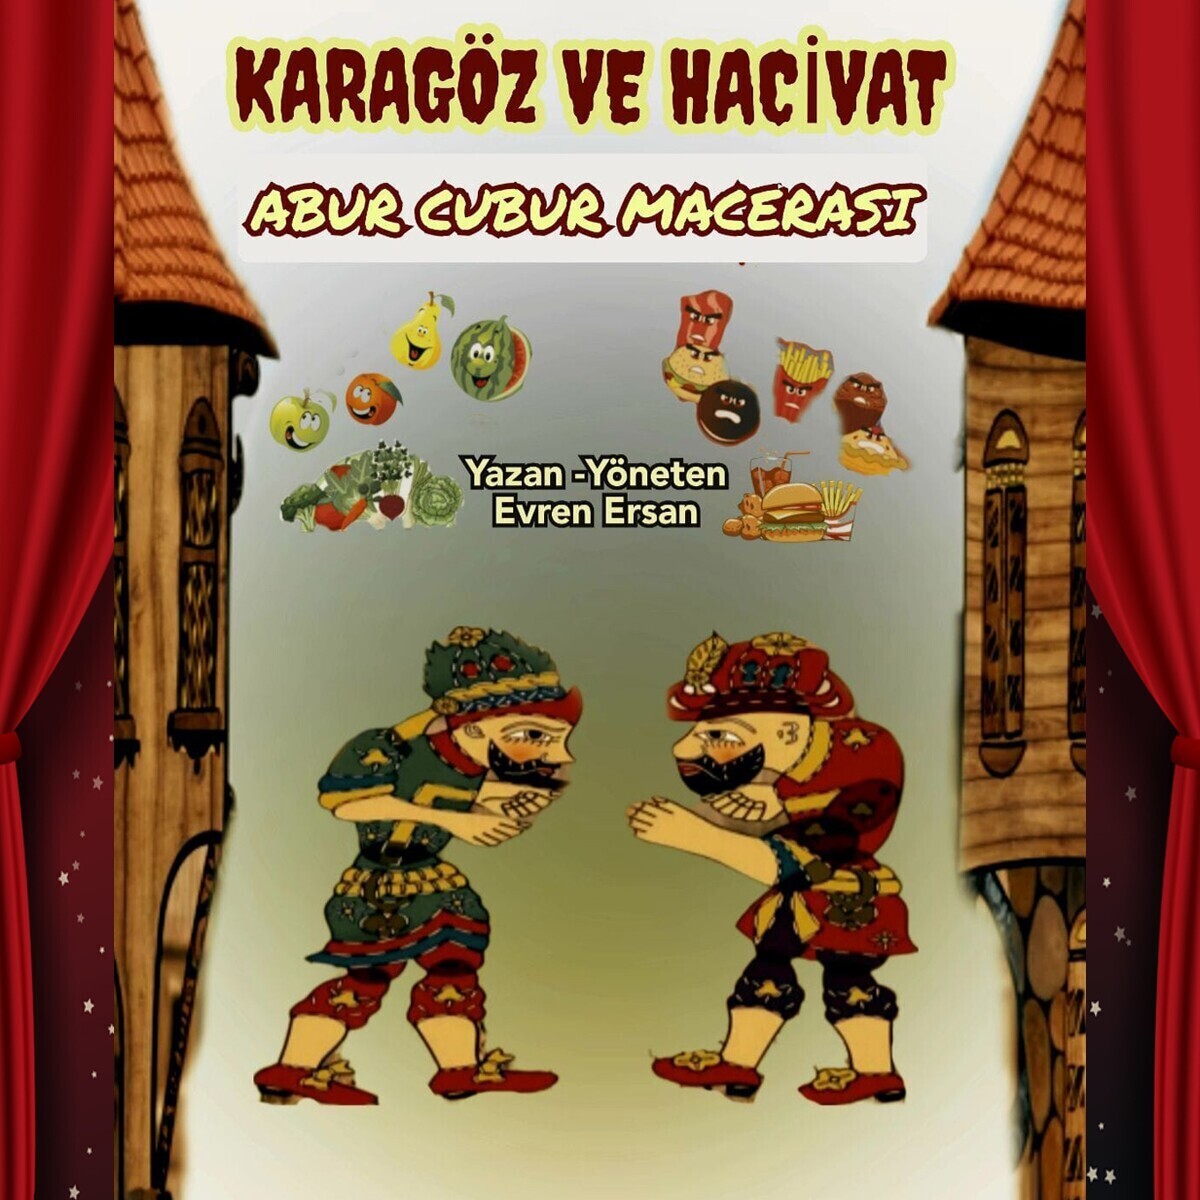 'Karagöz ve Hacivat Abur Cubur Macerası' Çocuk Tiyatro Bileti